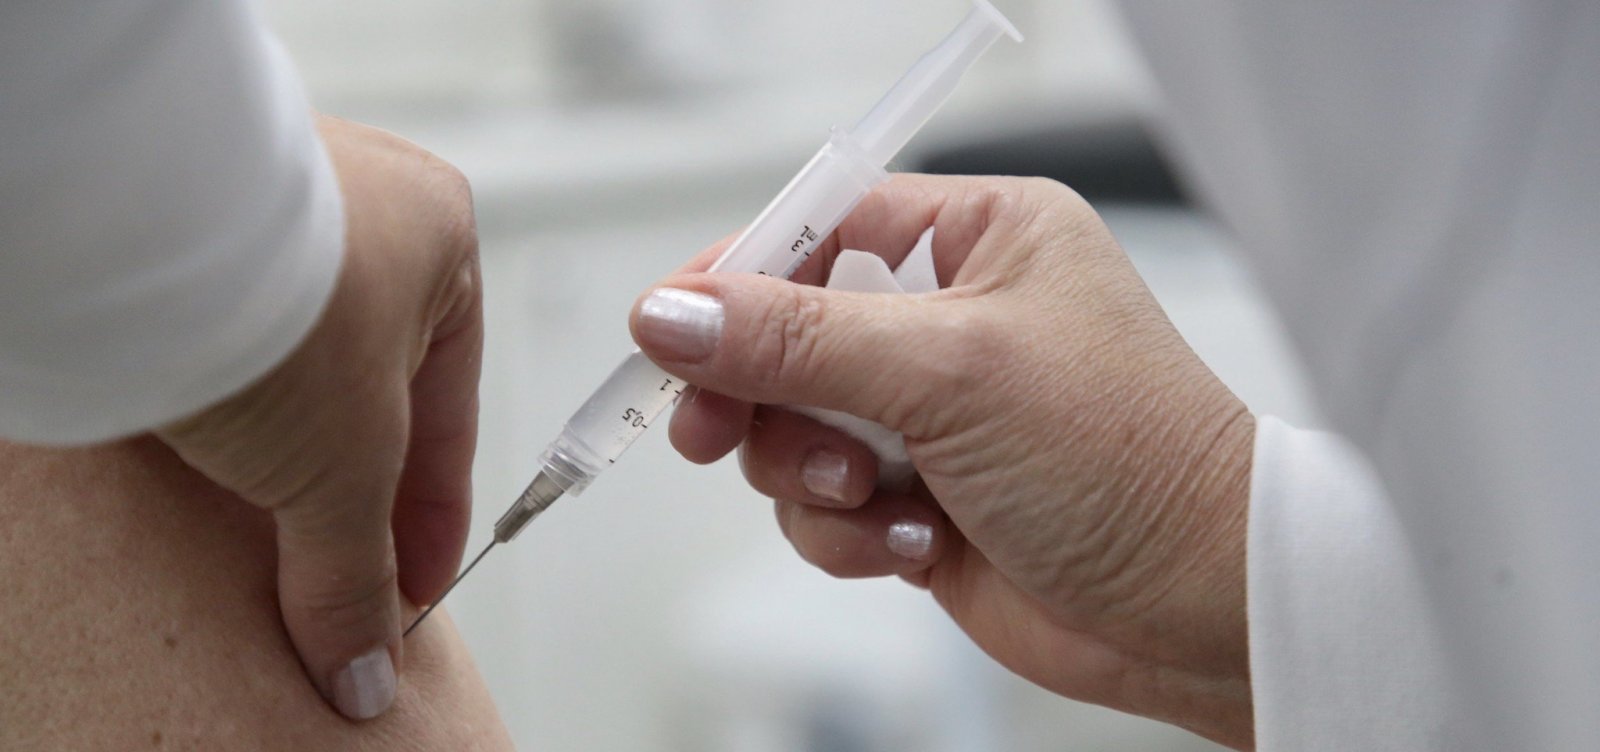 Prefeitura divulga lista de doenças que terão prioridade na vacina contra covid-19; saiba mais